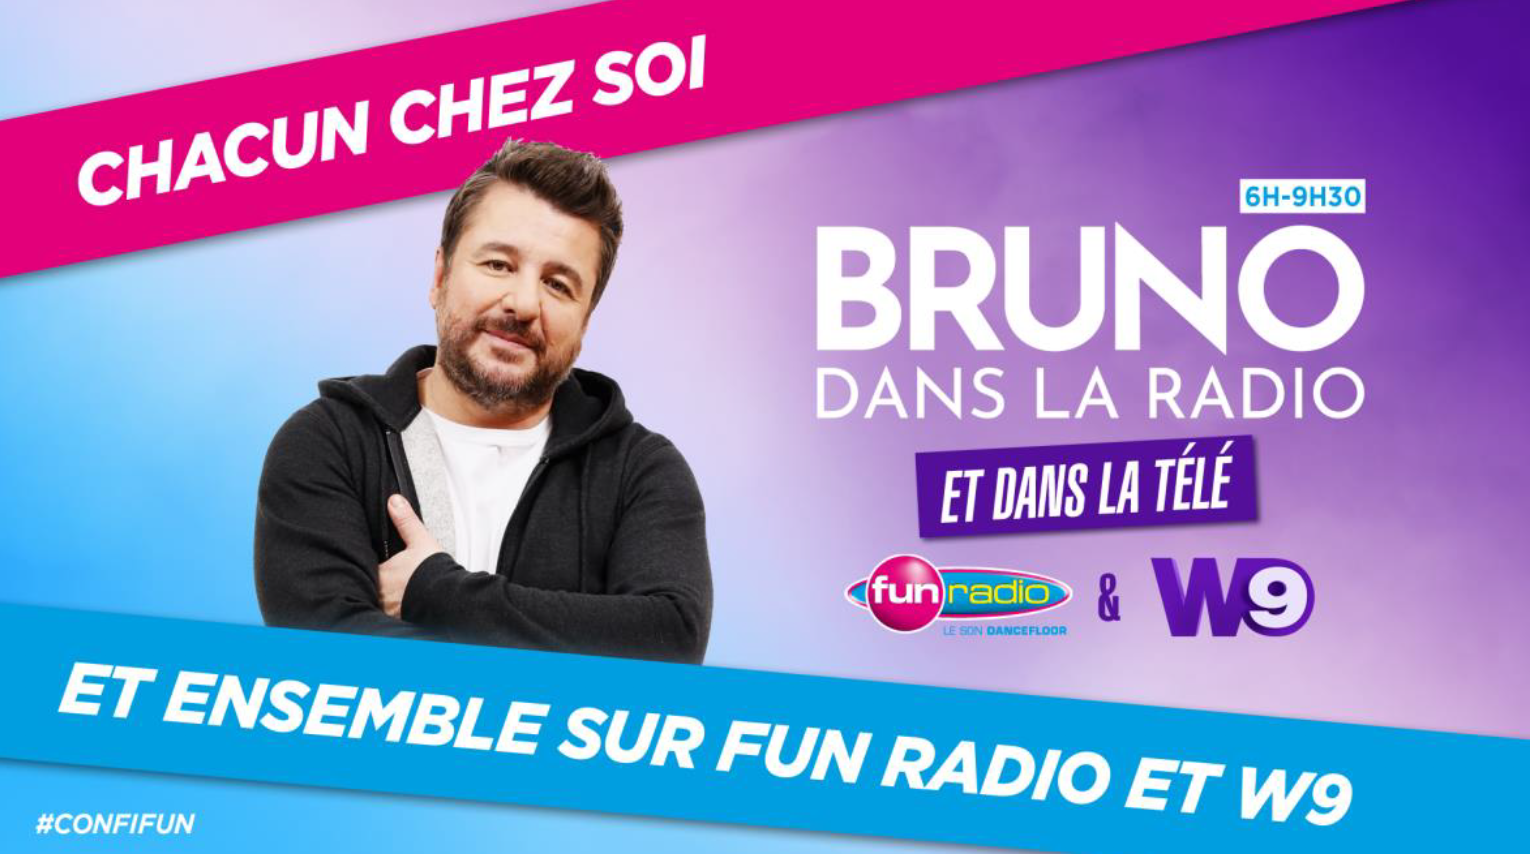 Covid-19 : l'émission "Bruno dans la radio" diffusée en direct sur W9